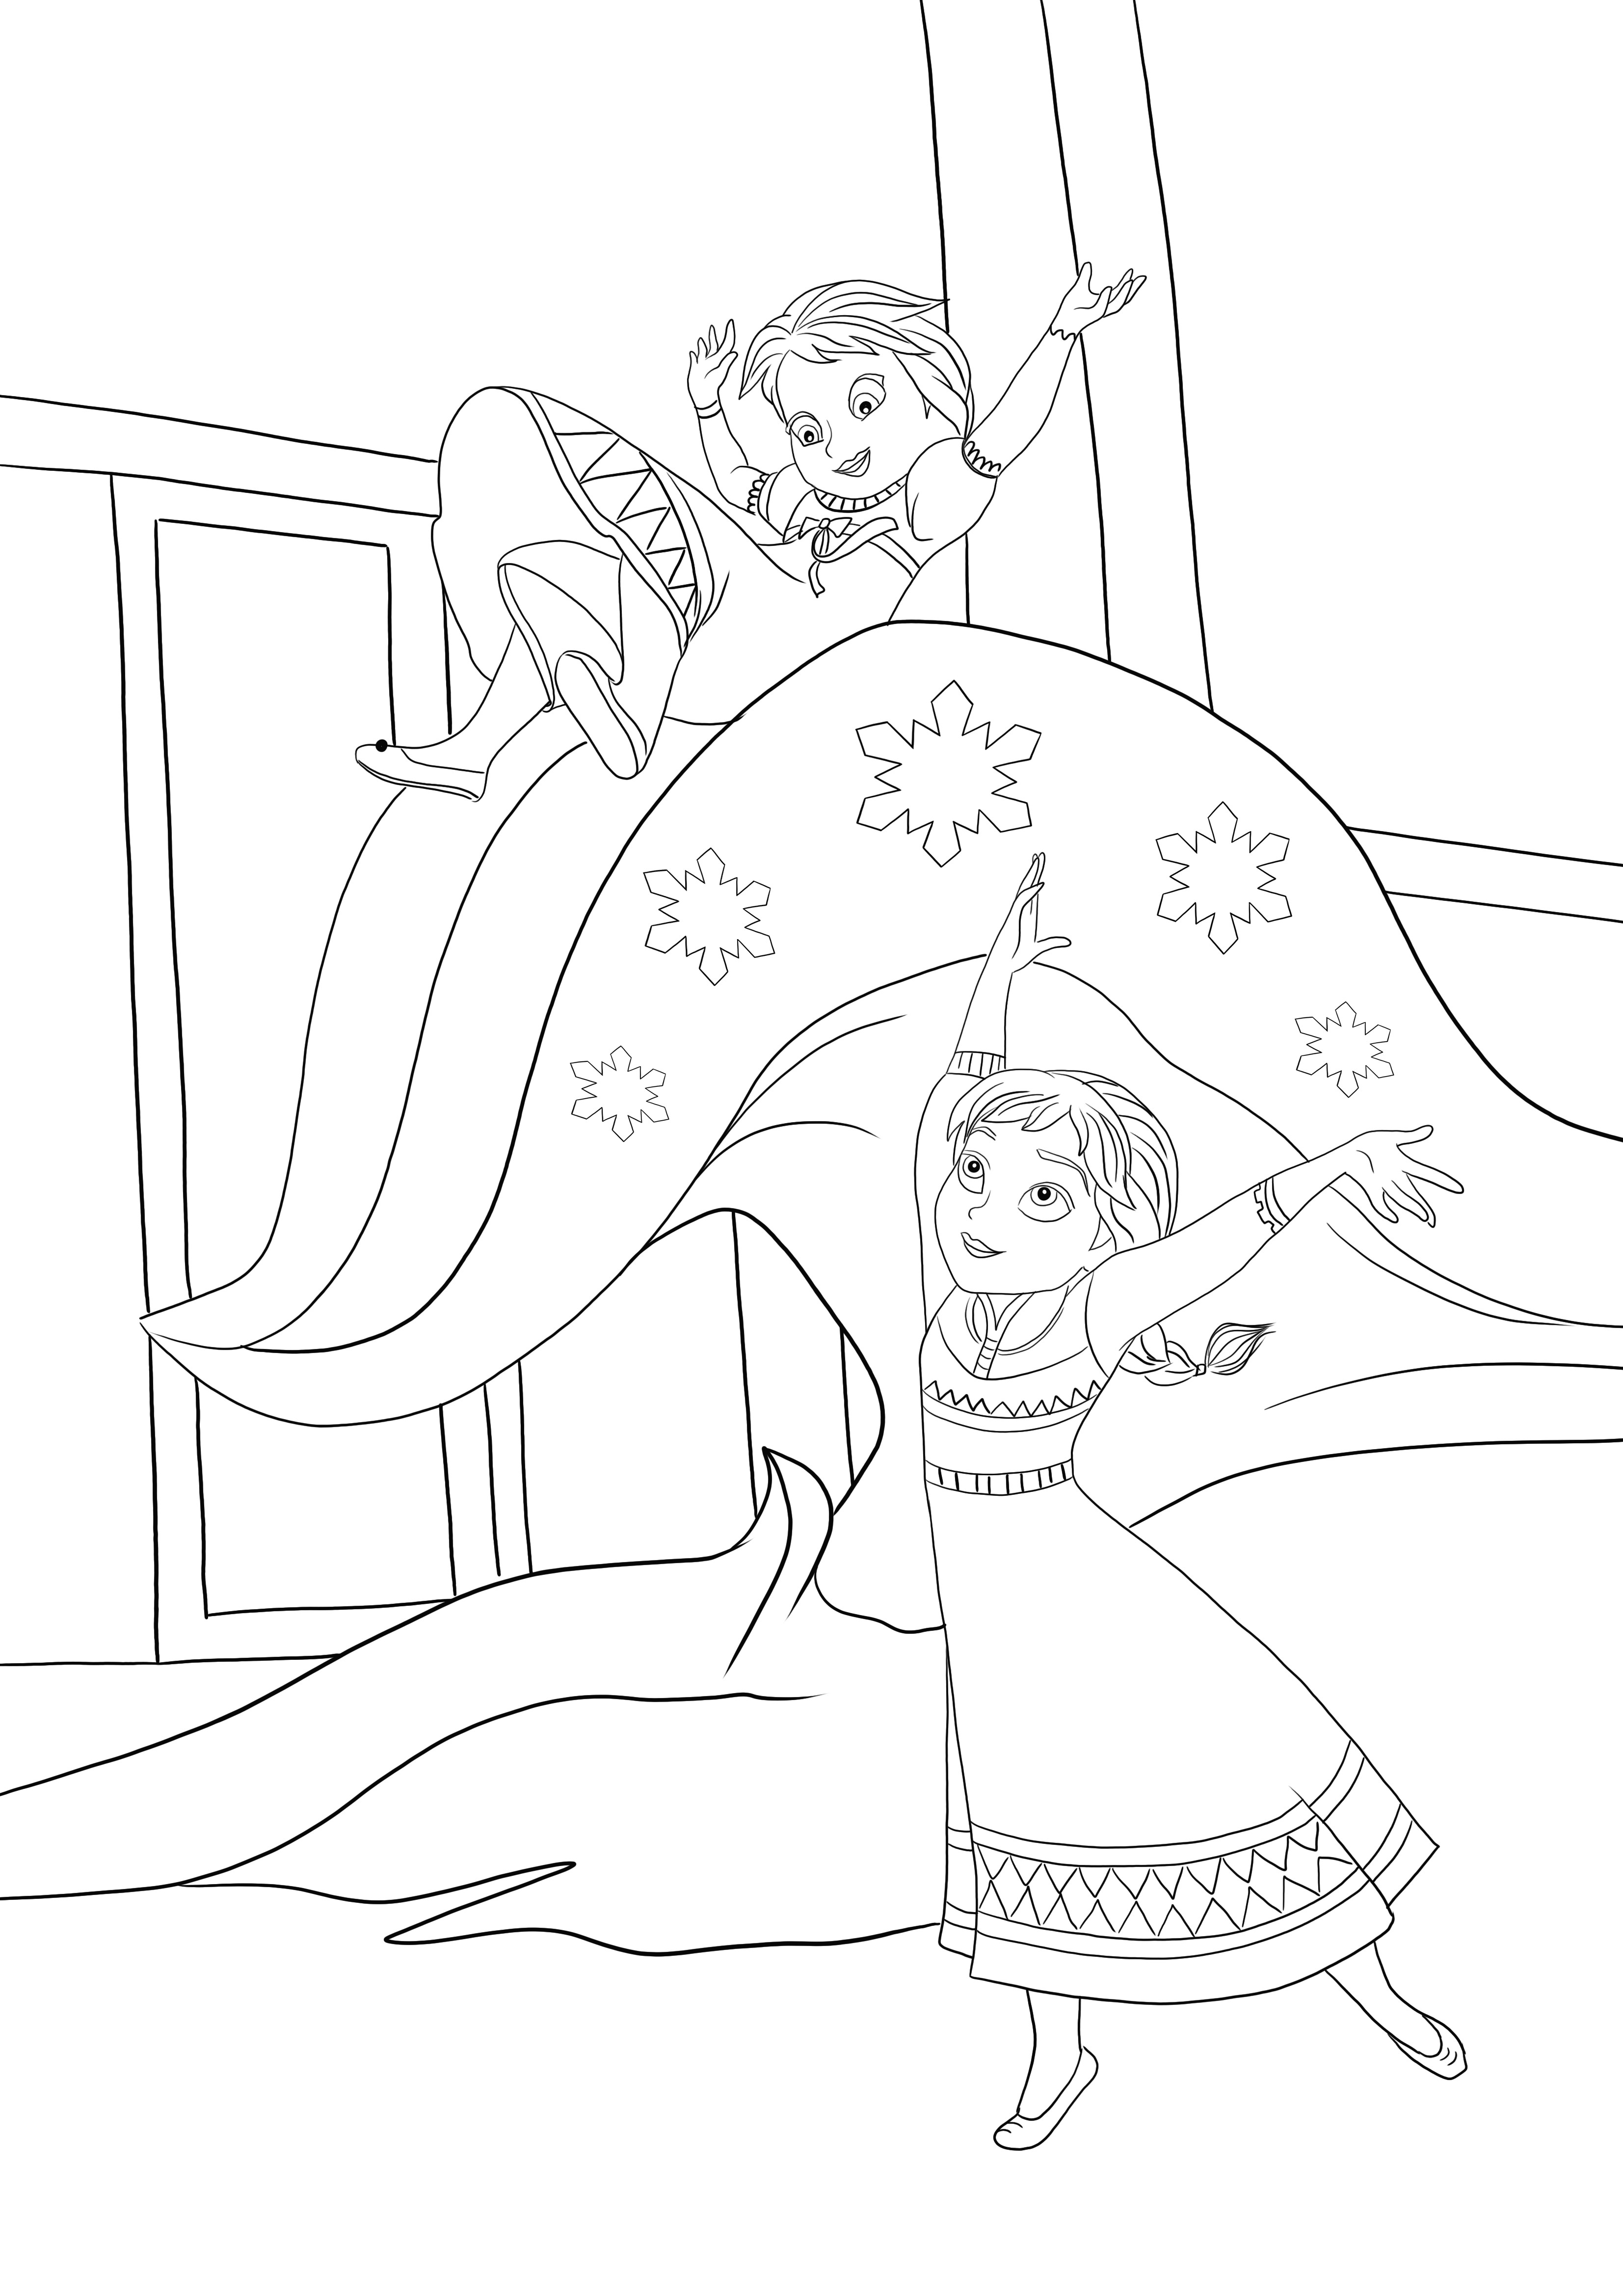 Mała Elsa używa swoich lodowych mocy z Anną do bezpłatnego pobrania i pokolorowania obrazka